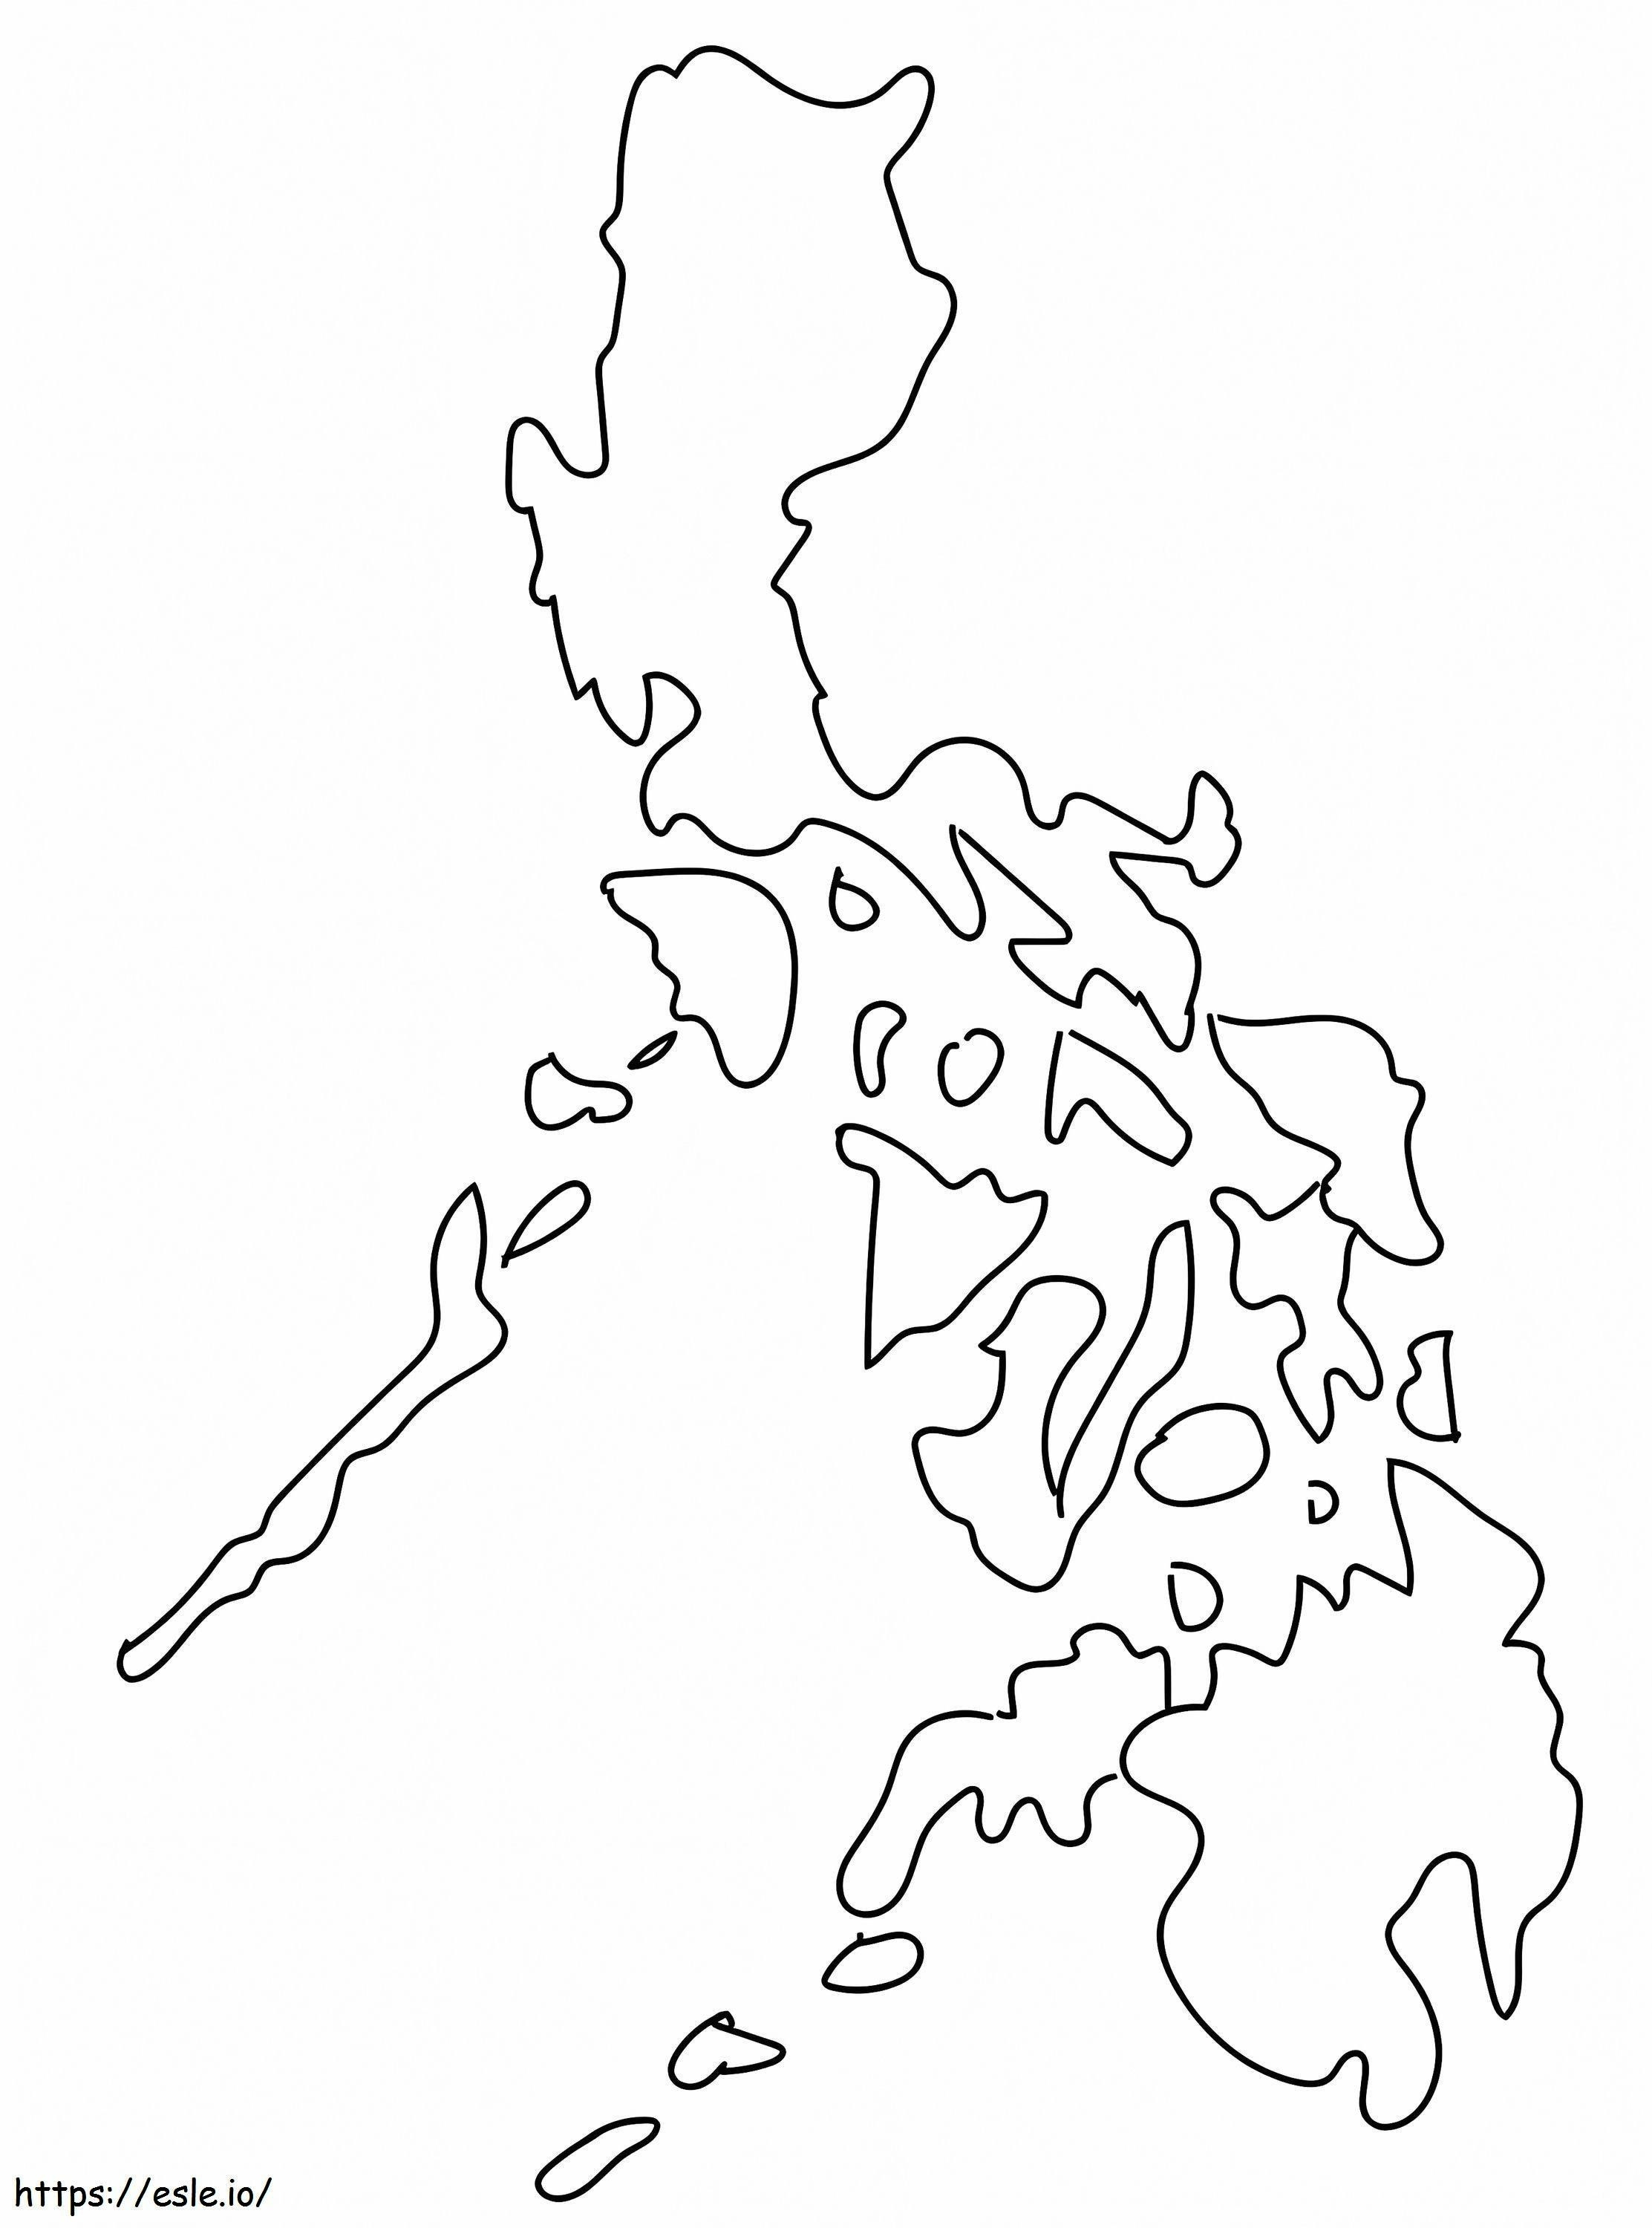 Harta Filipinelor de colorat